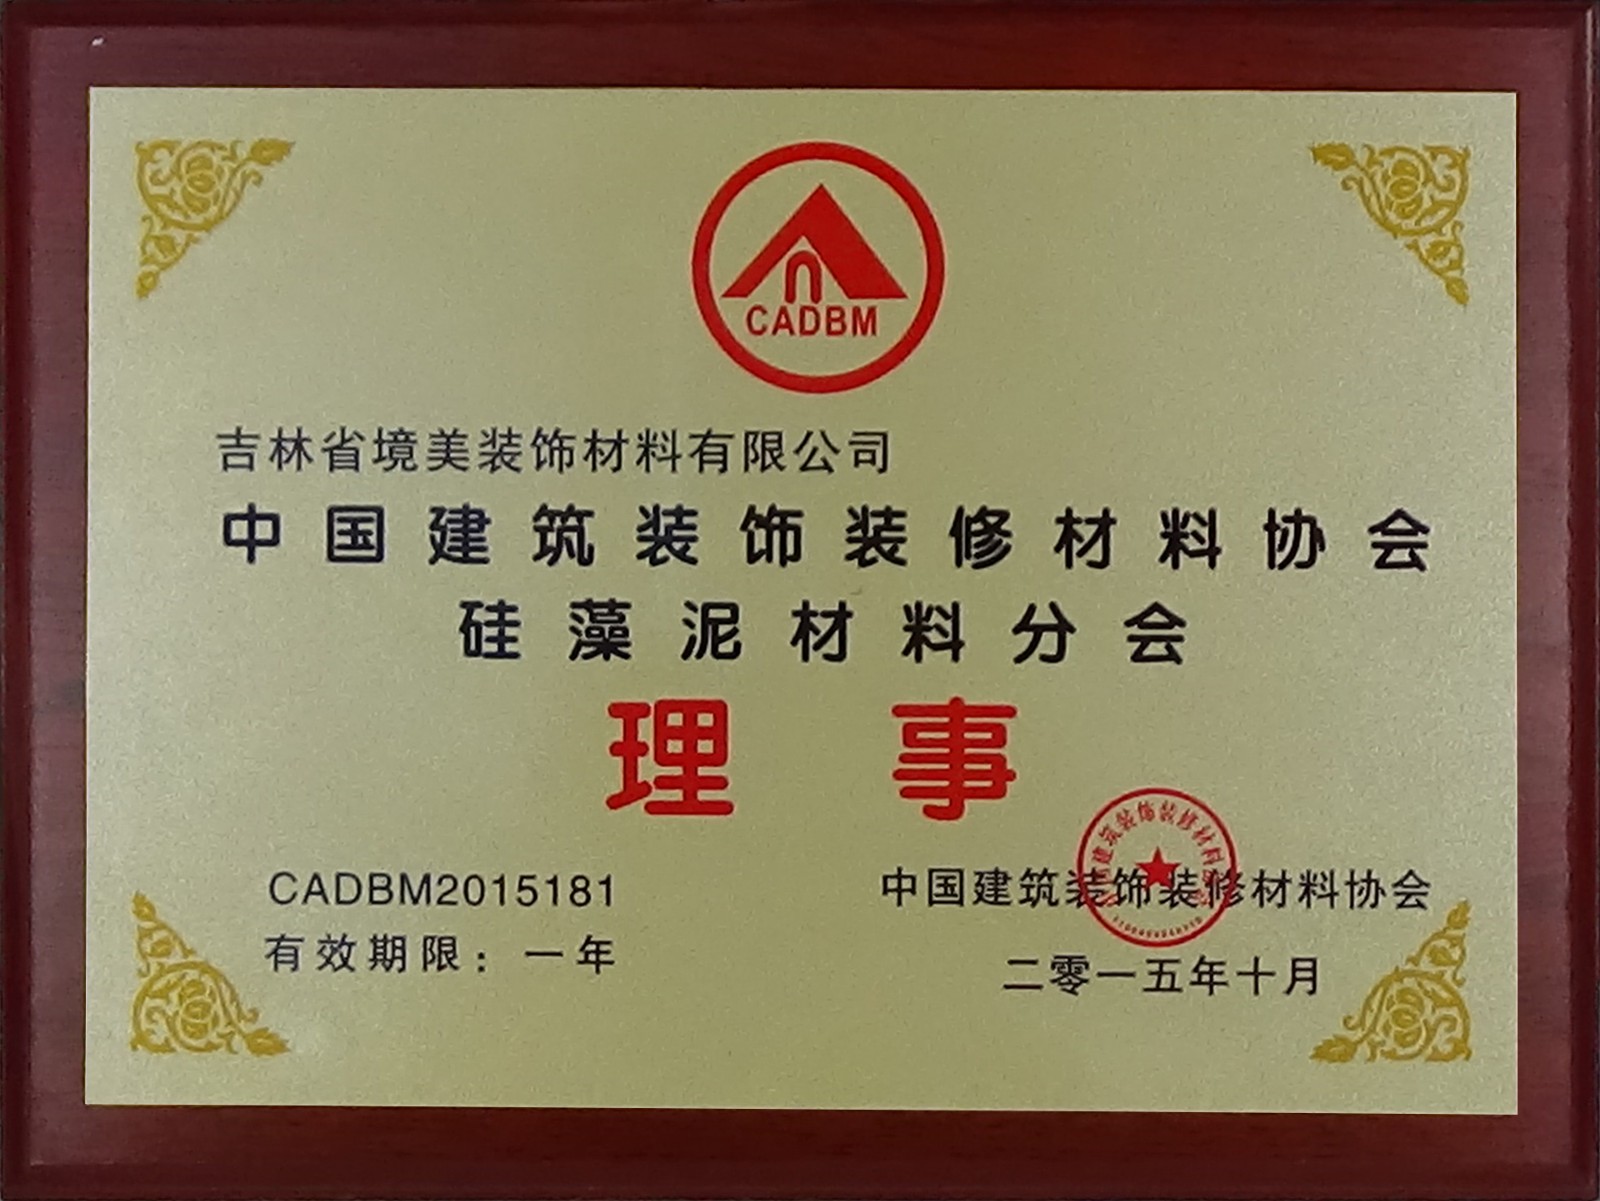 中国建筑装饰装修材料协会硅藻泥材料分会理事